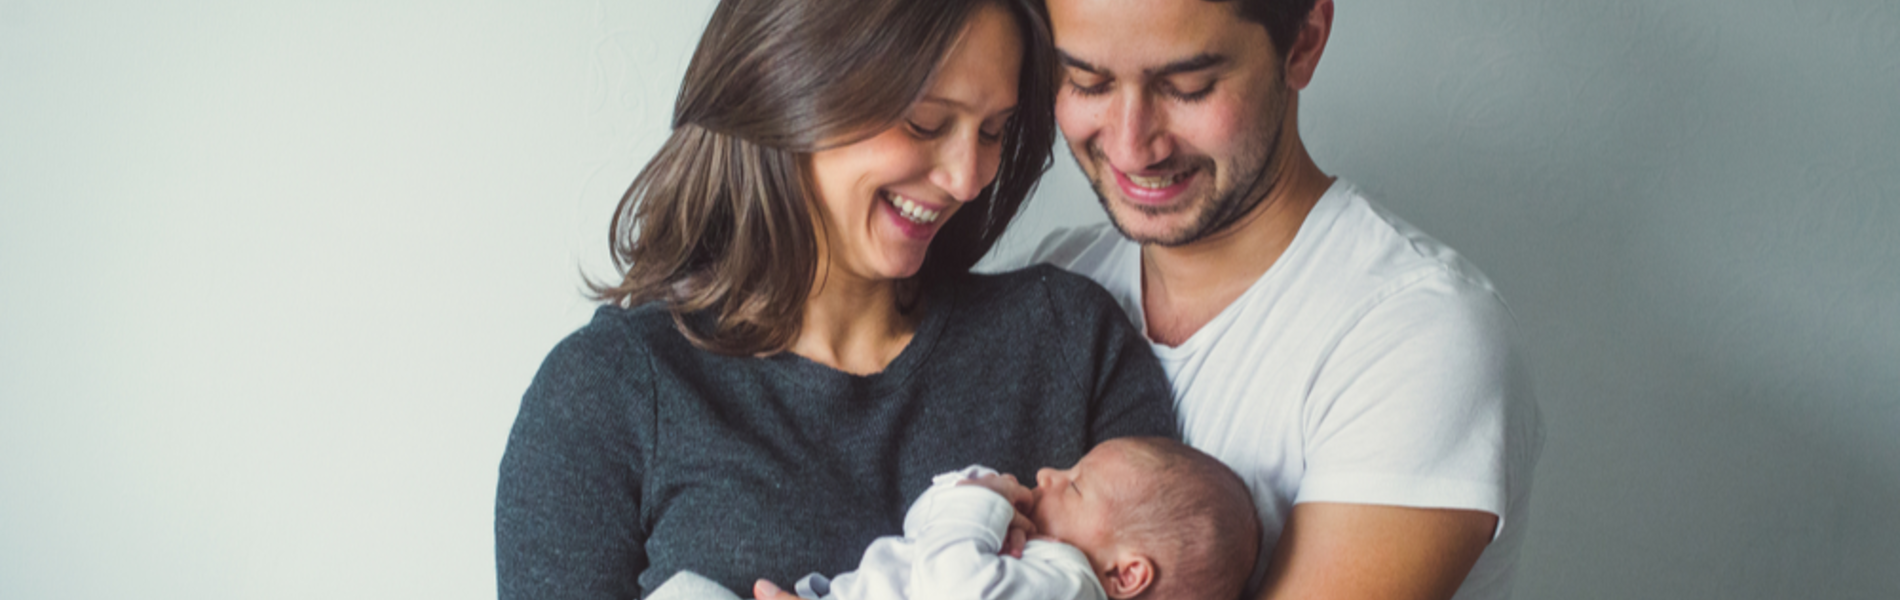 הבדיקה שתאפשר ללדת תינוק בריא גם למשפחה עם מחלות גנטיות